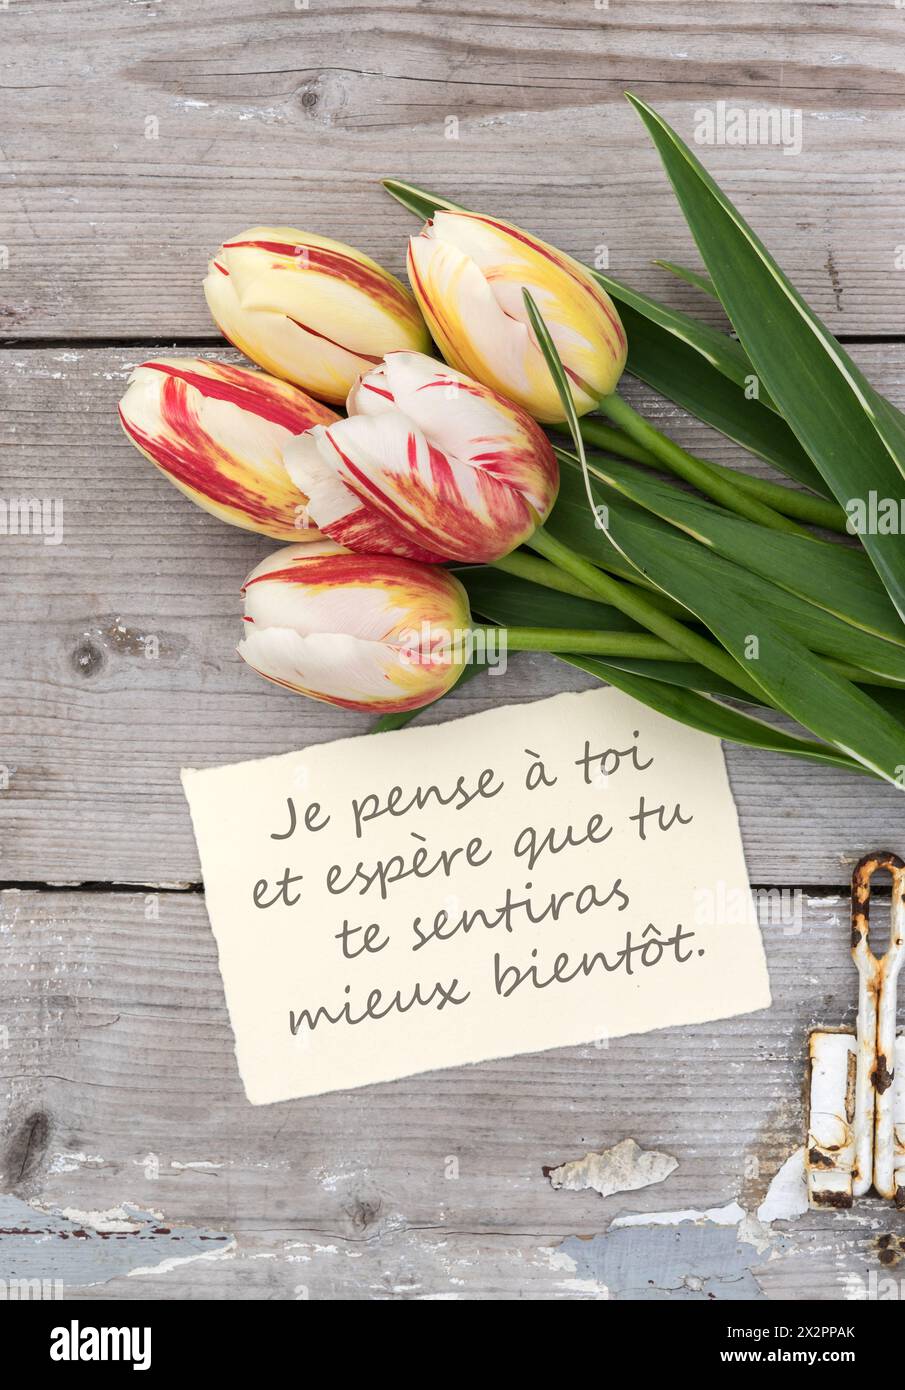 Grußkarte mit roten, gelben und weißen Tulpen und französischem Text: I'm Thinking of you. Ich hoffe, du fühlst dich bald besser Stockfoto